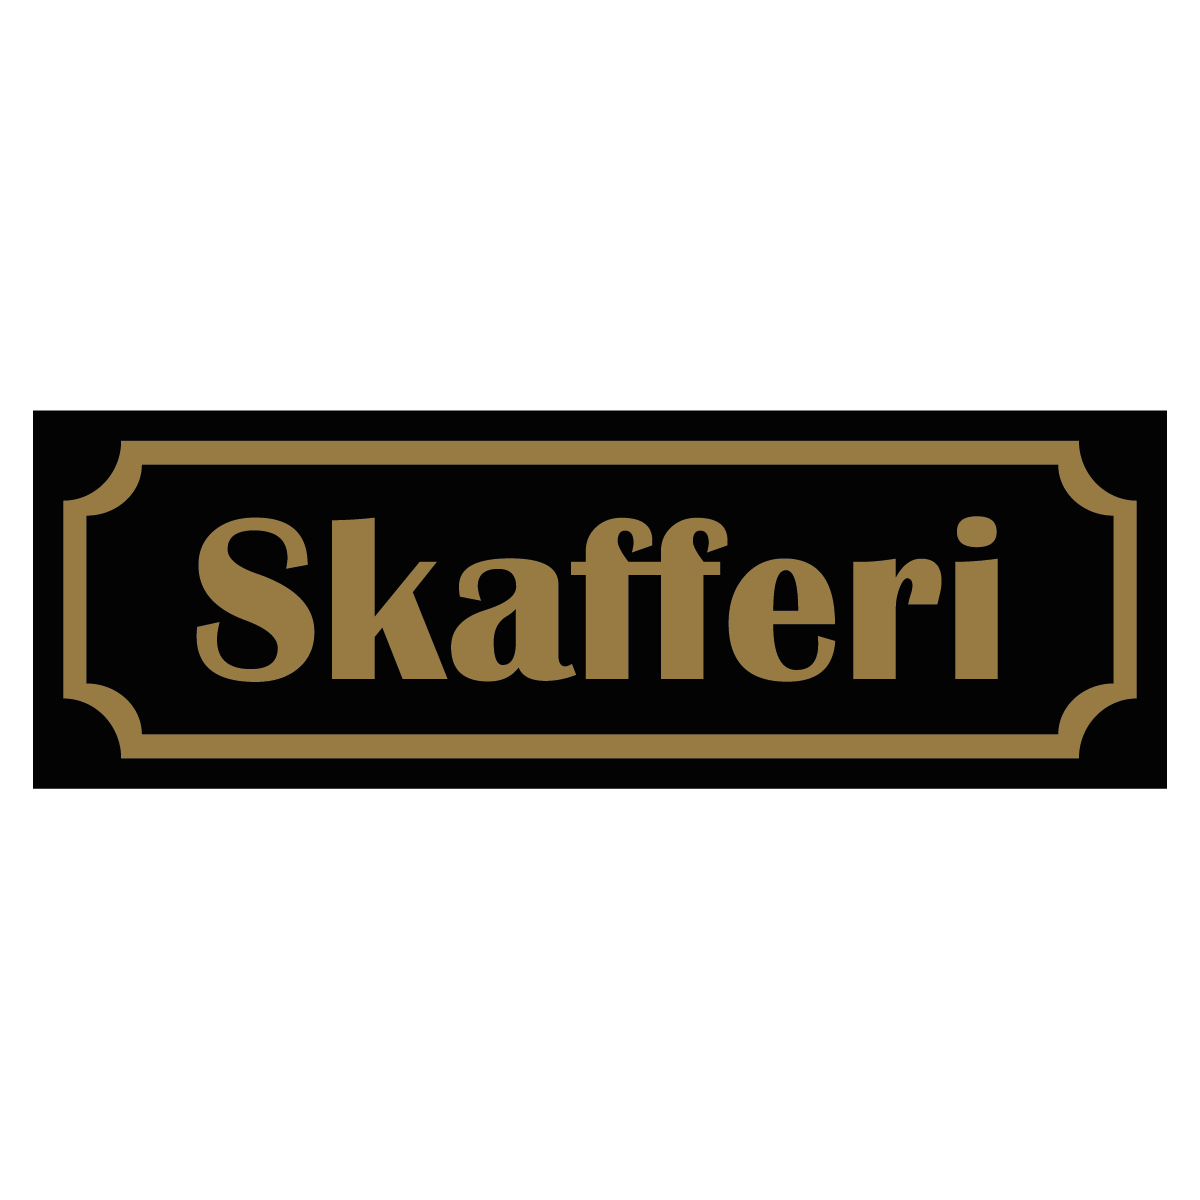 Skafferi - Skylt - 150x50mm - Svart - Guld